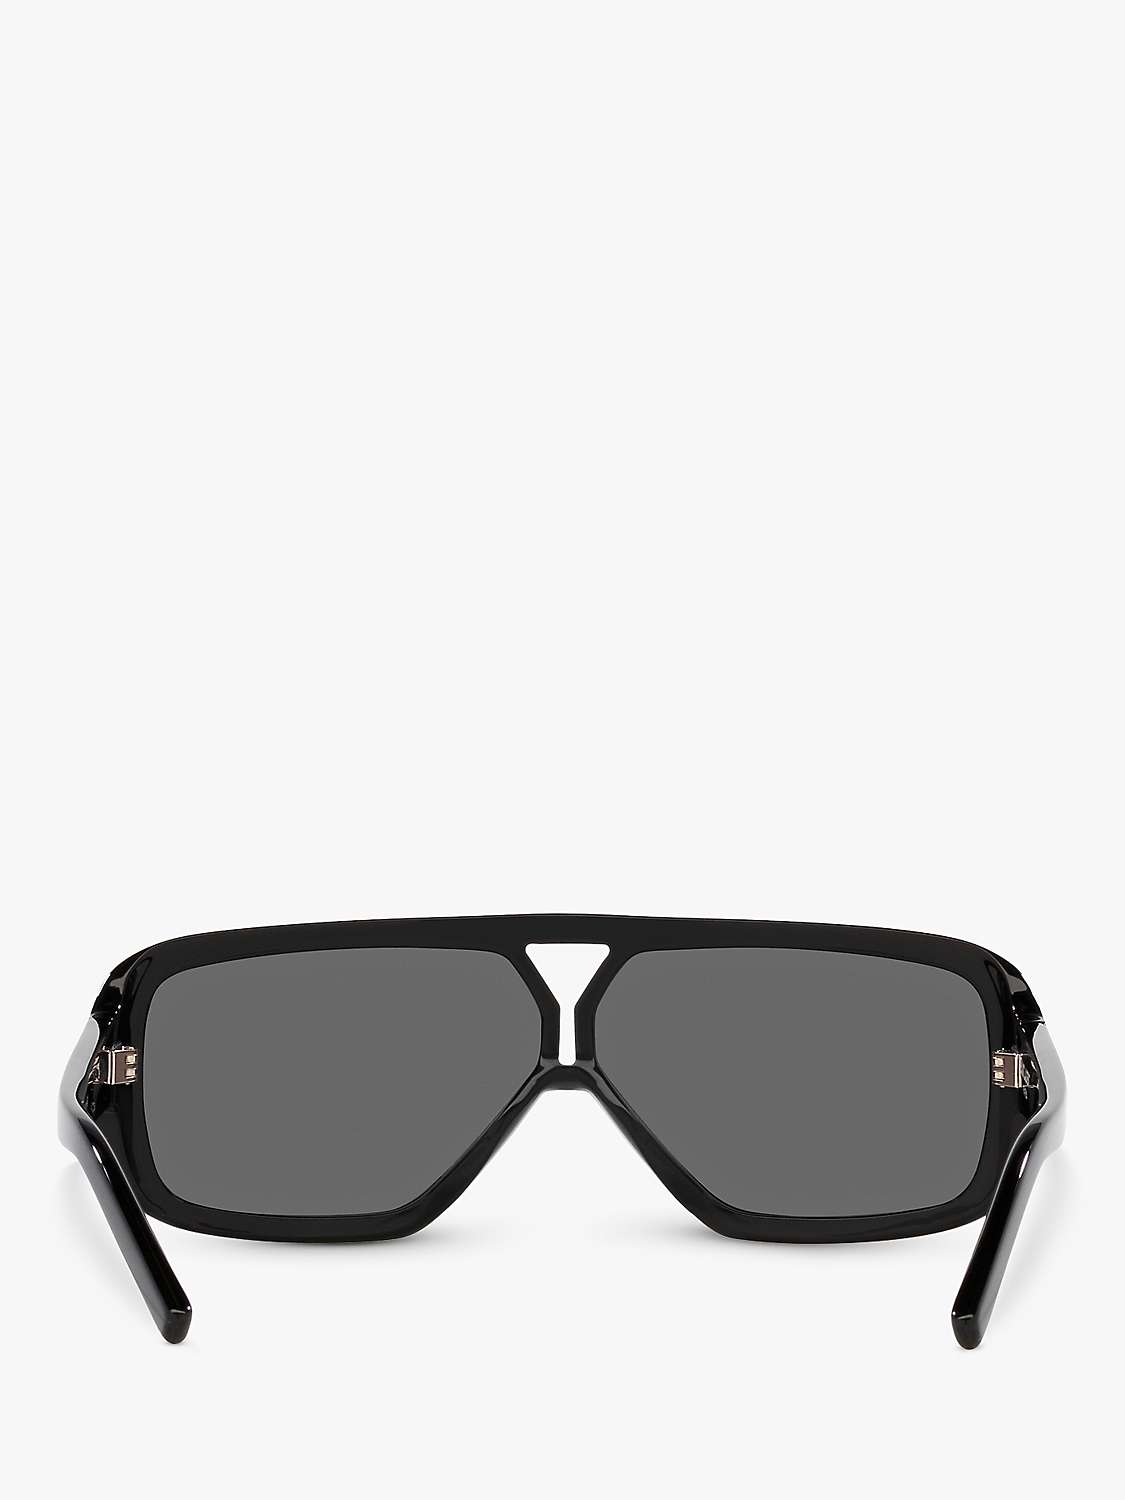 Buy Yves Saint Laurent YS000434 Women's Rectangular Sunglasses, Black Online at johnlewis.com